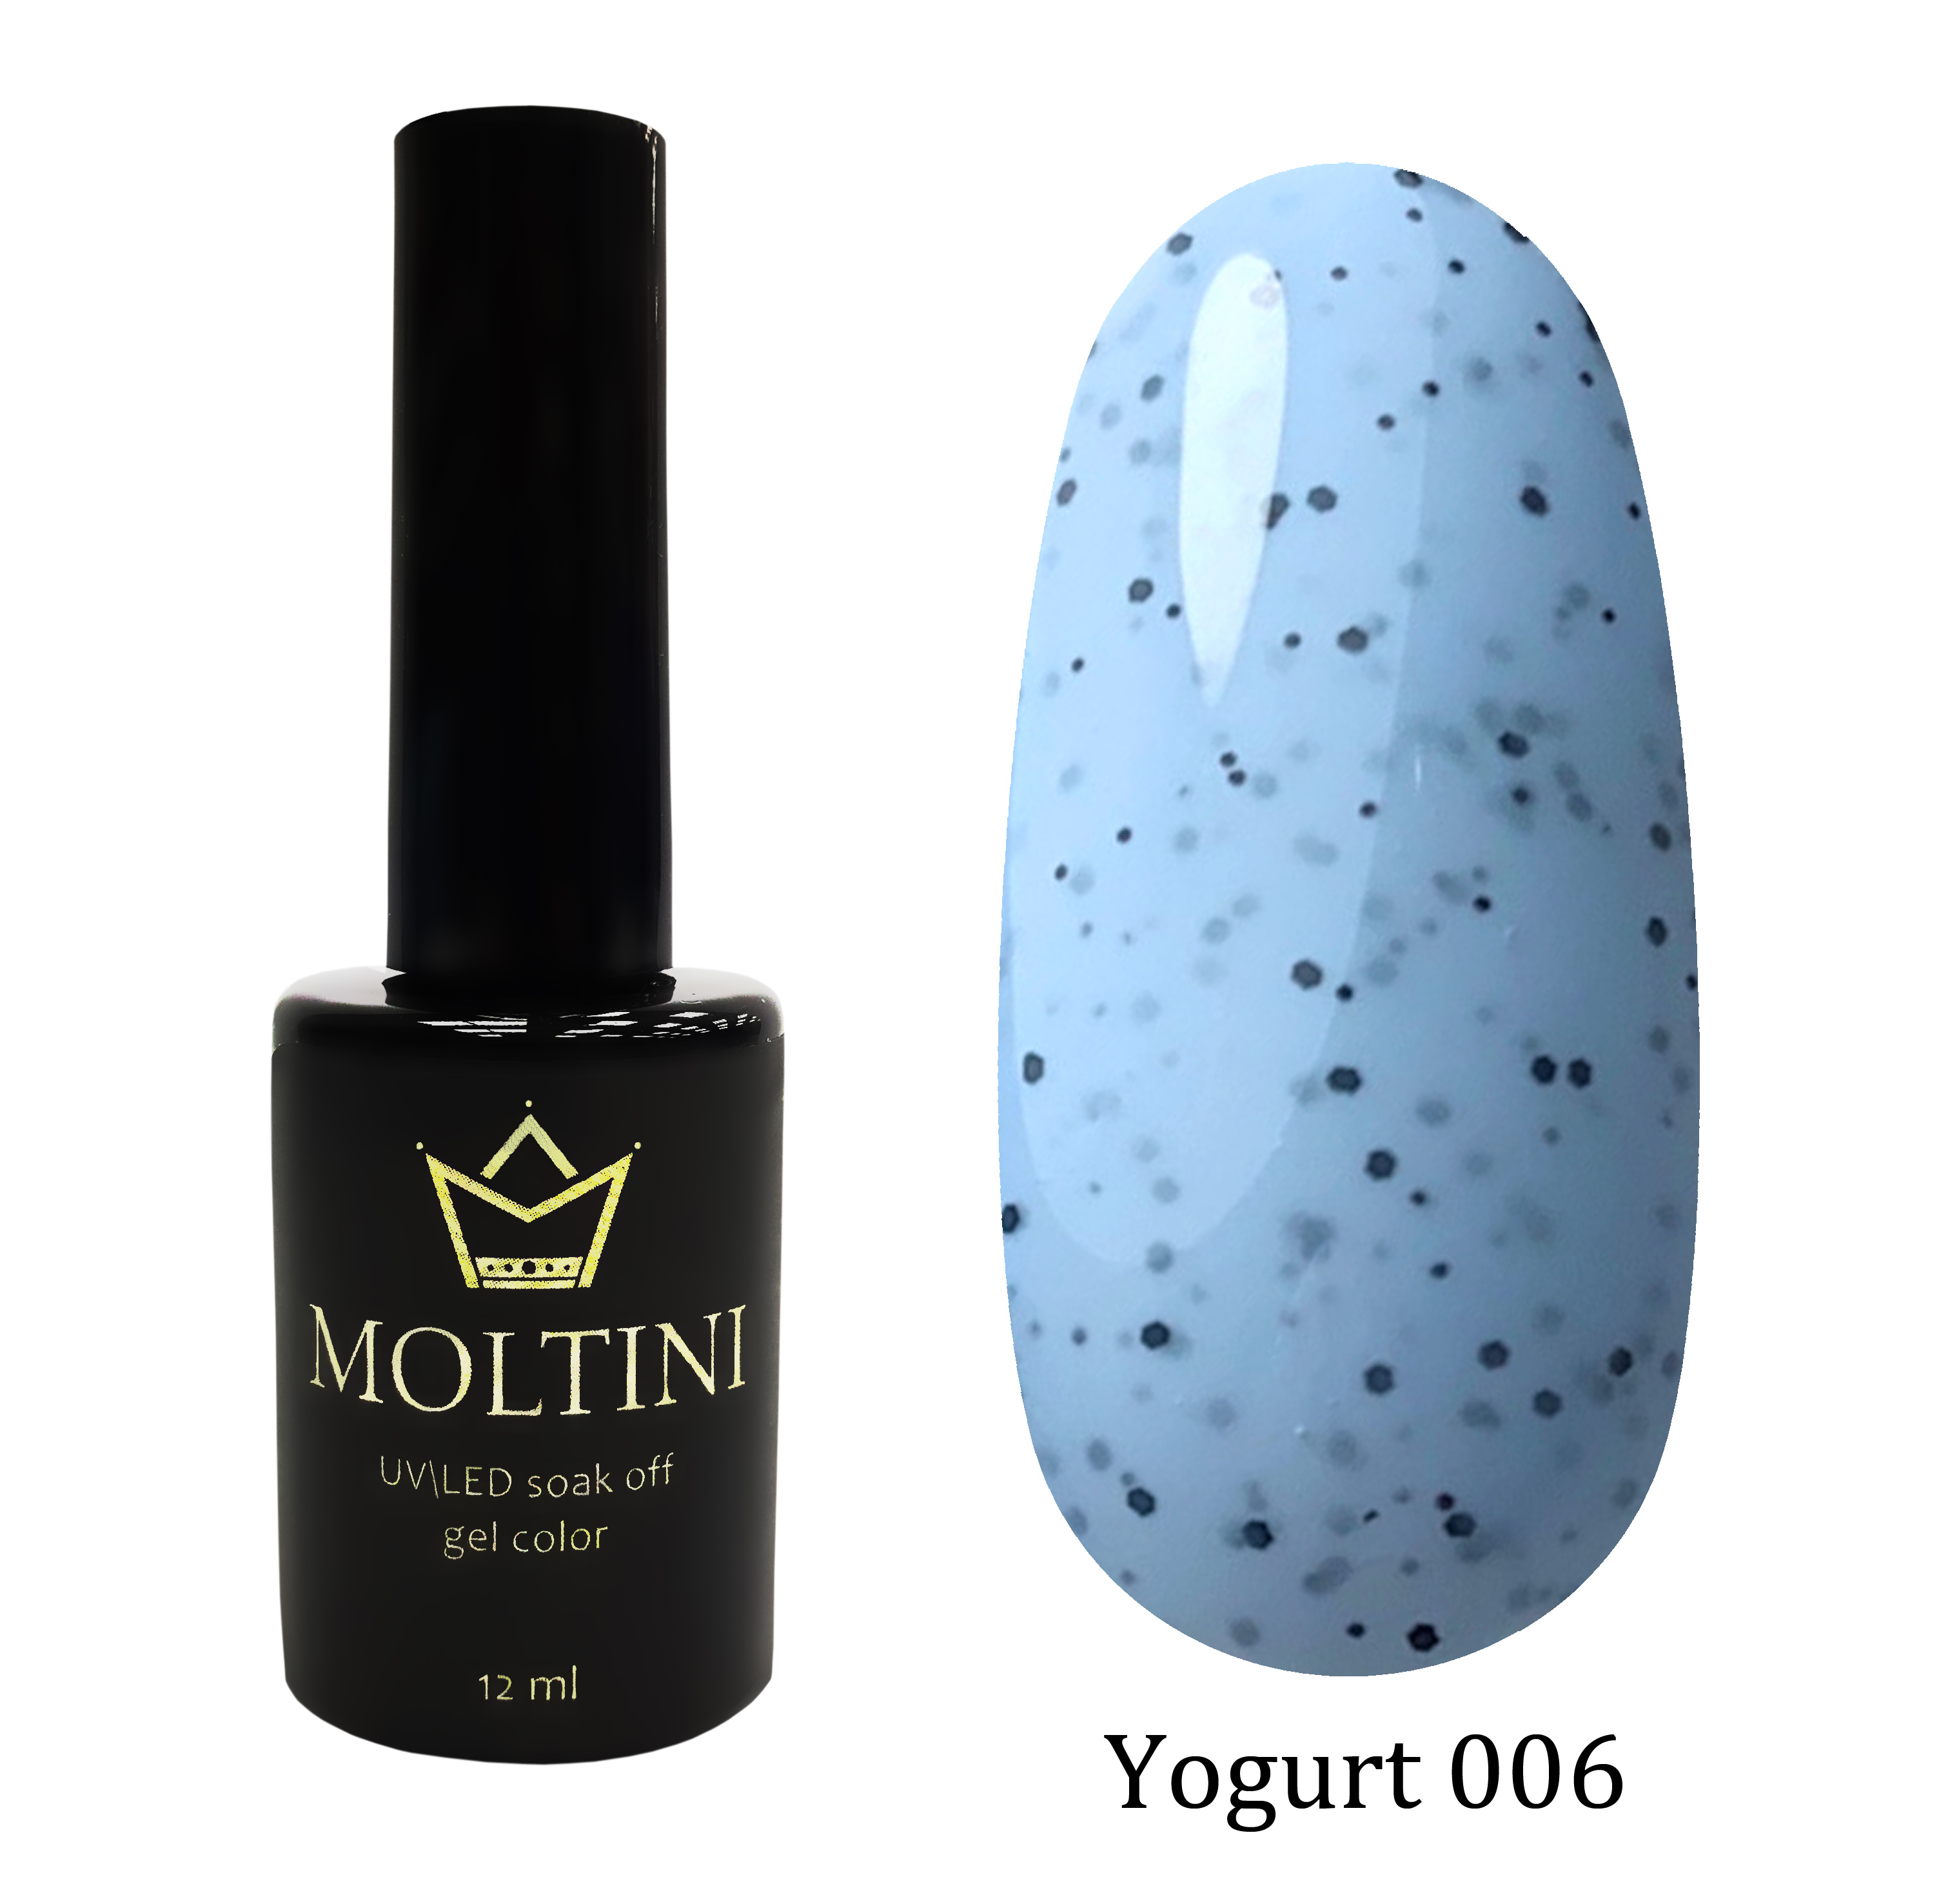 Moltini цветной гель-лак Yogurt 006, 12 мл